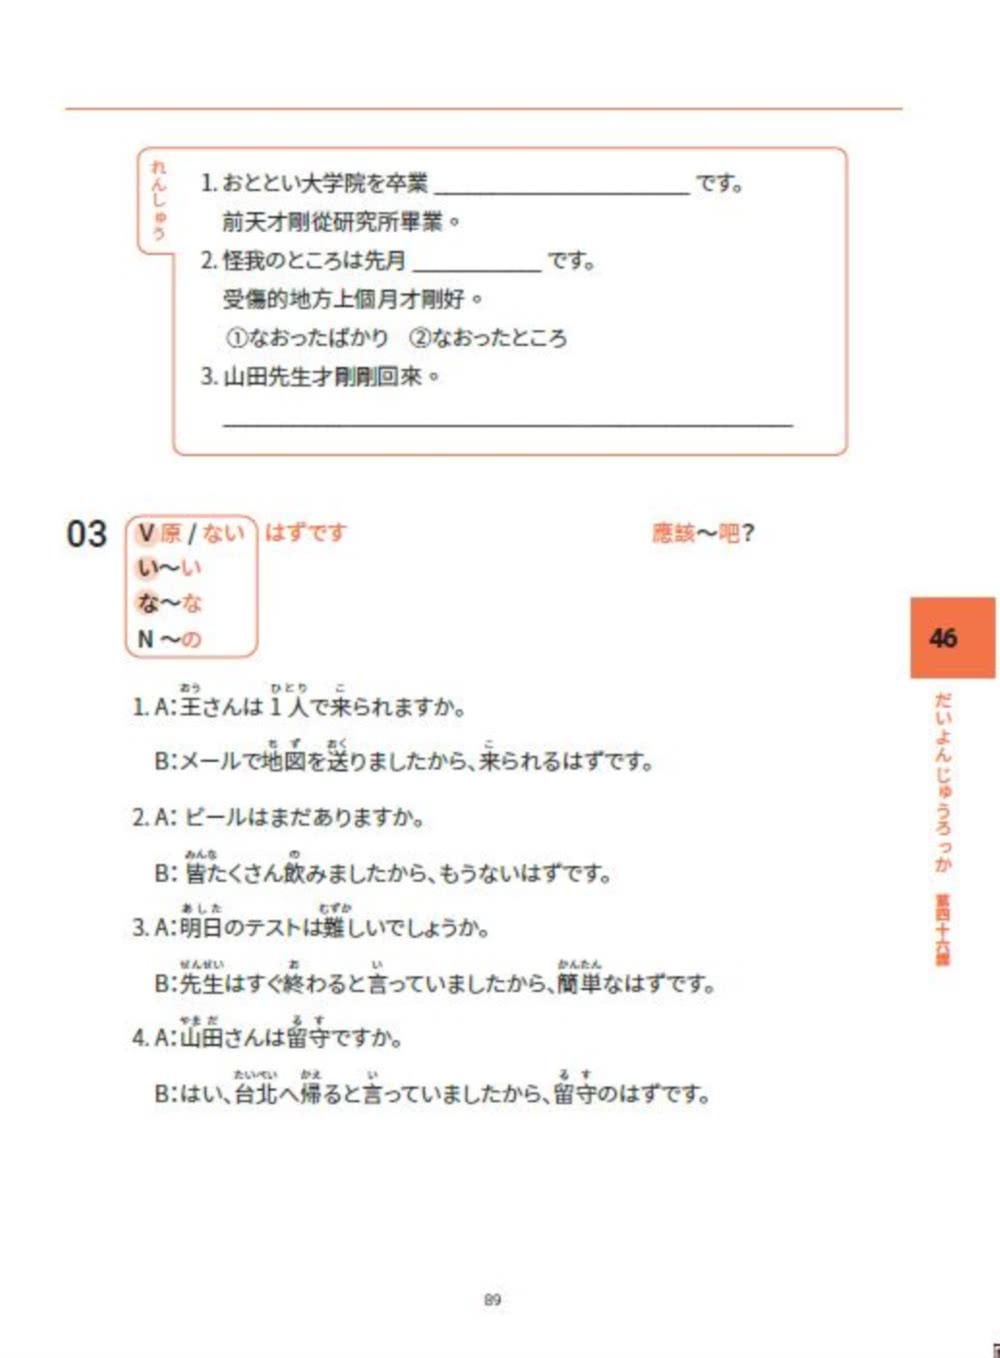 大家一起學習日文吧！王可樂日語初級直達車4：詳盡文法、大量練習題、豐富附錄